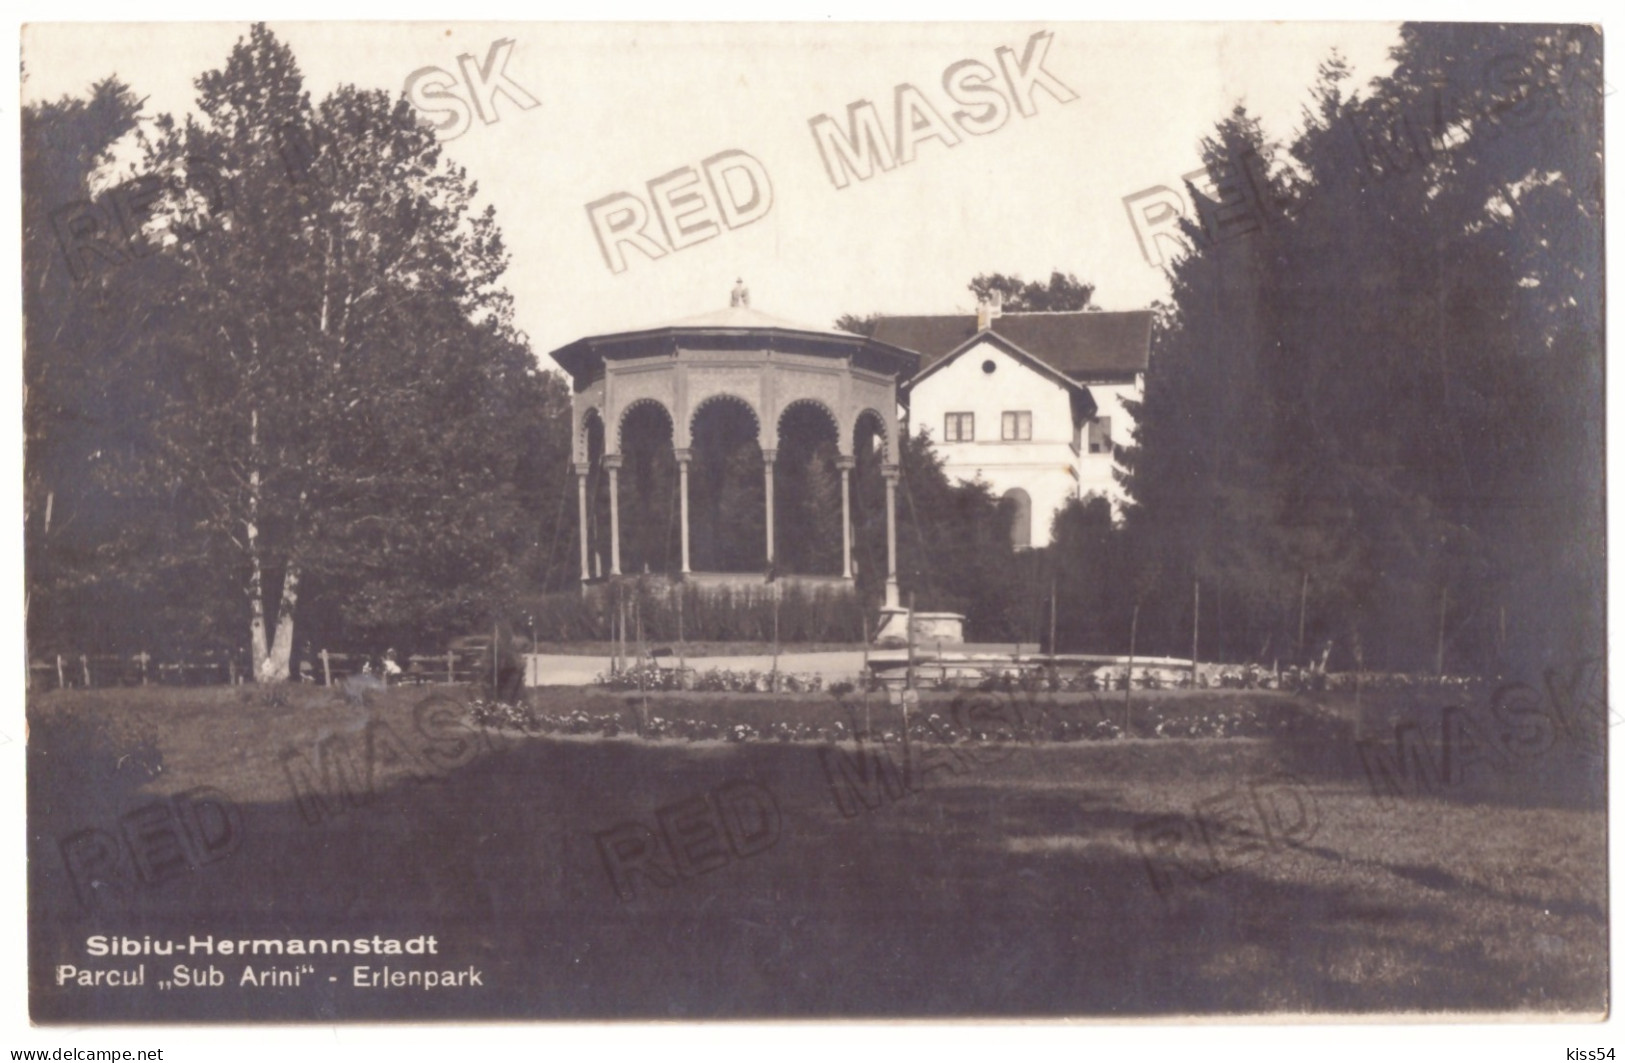 RO 79 - 21083 SIBIU, Park, Romania - Old Postcard, Real Photo - Used - 1929 - Romania